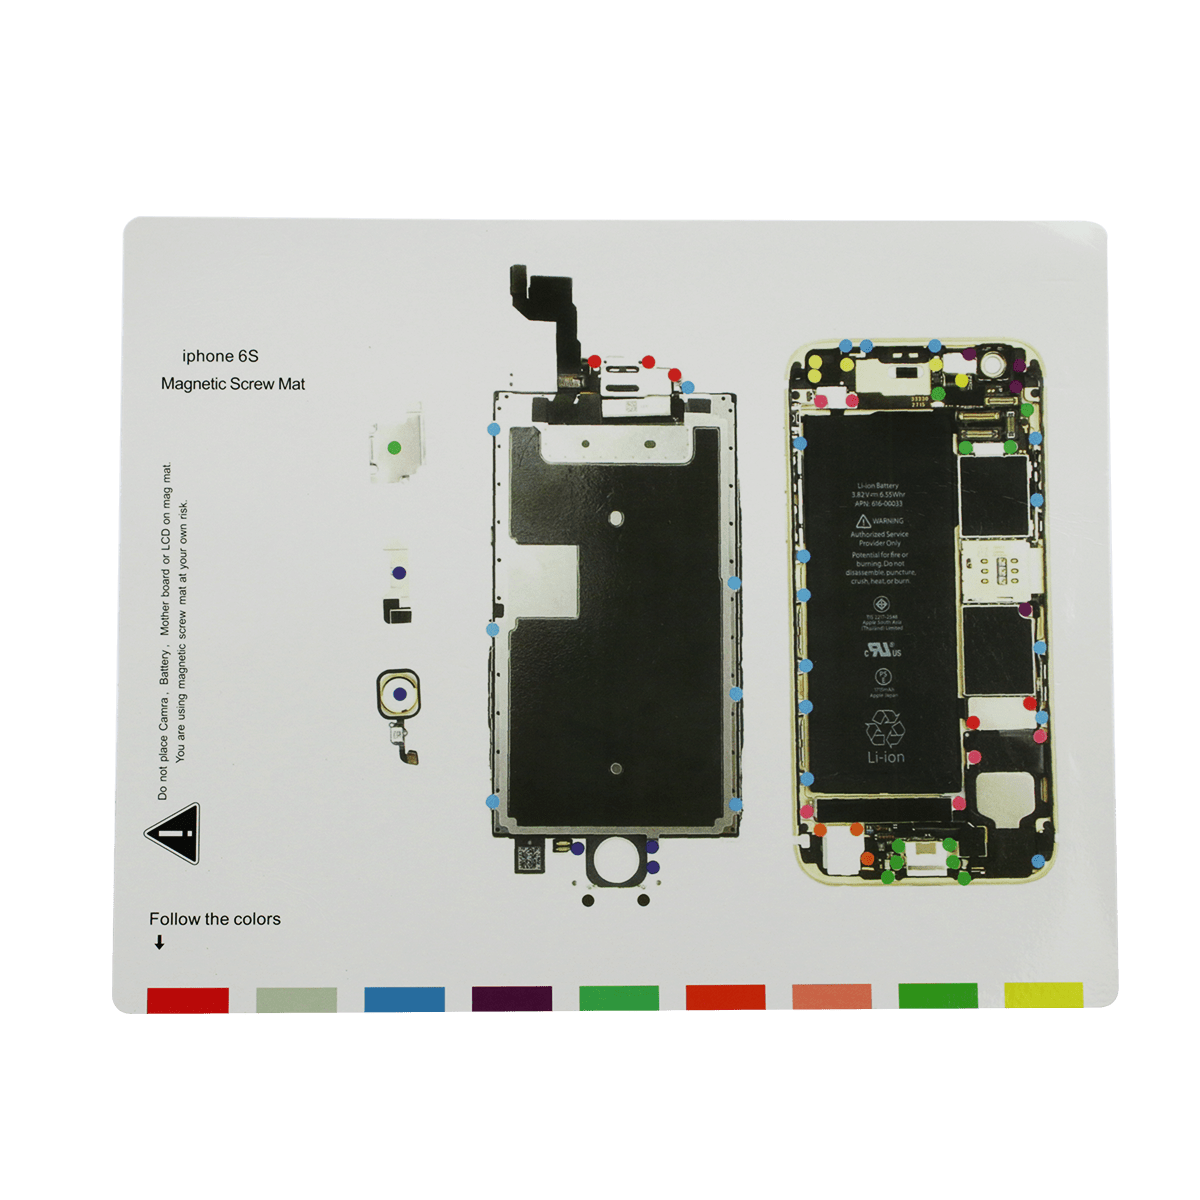 iphone-6s-magnetic-screw-mat